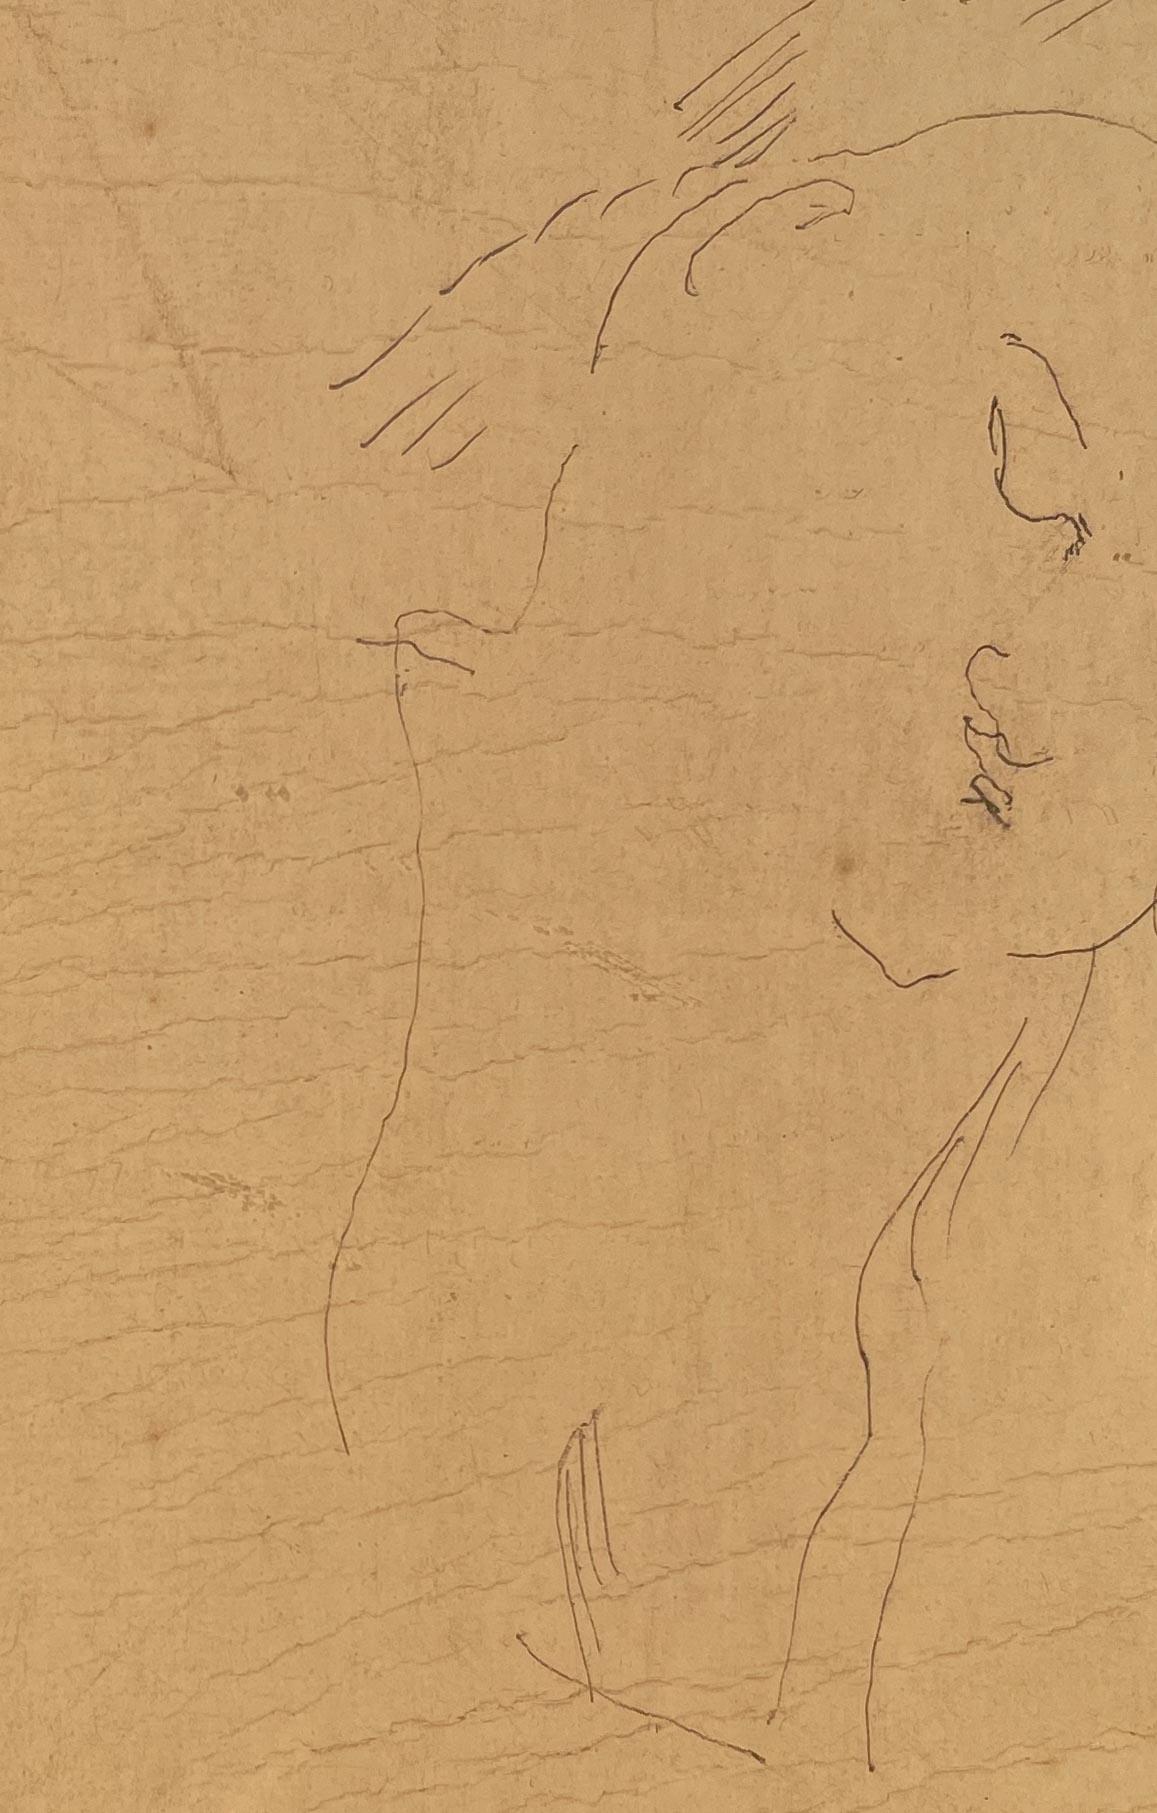 Schlafende Figur von Jules Pascin (1885-1930)
Radierung auf Papier
5 ½ x 4 Zoll ungerahmt (13,97 x 10,16 cm) 
13 ¼ x 12 Zoll gerahmt (33,655 x 30,48 cm)

Beschreibung:
Jules Pascin war ein bulgarischer Maler, der im Gegensatz zu seiner